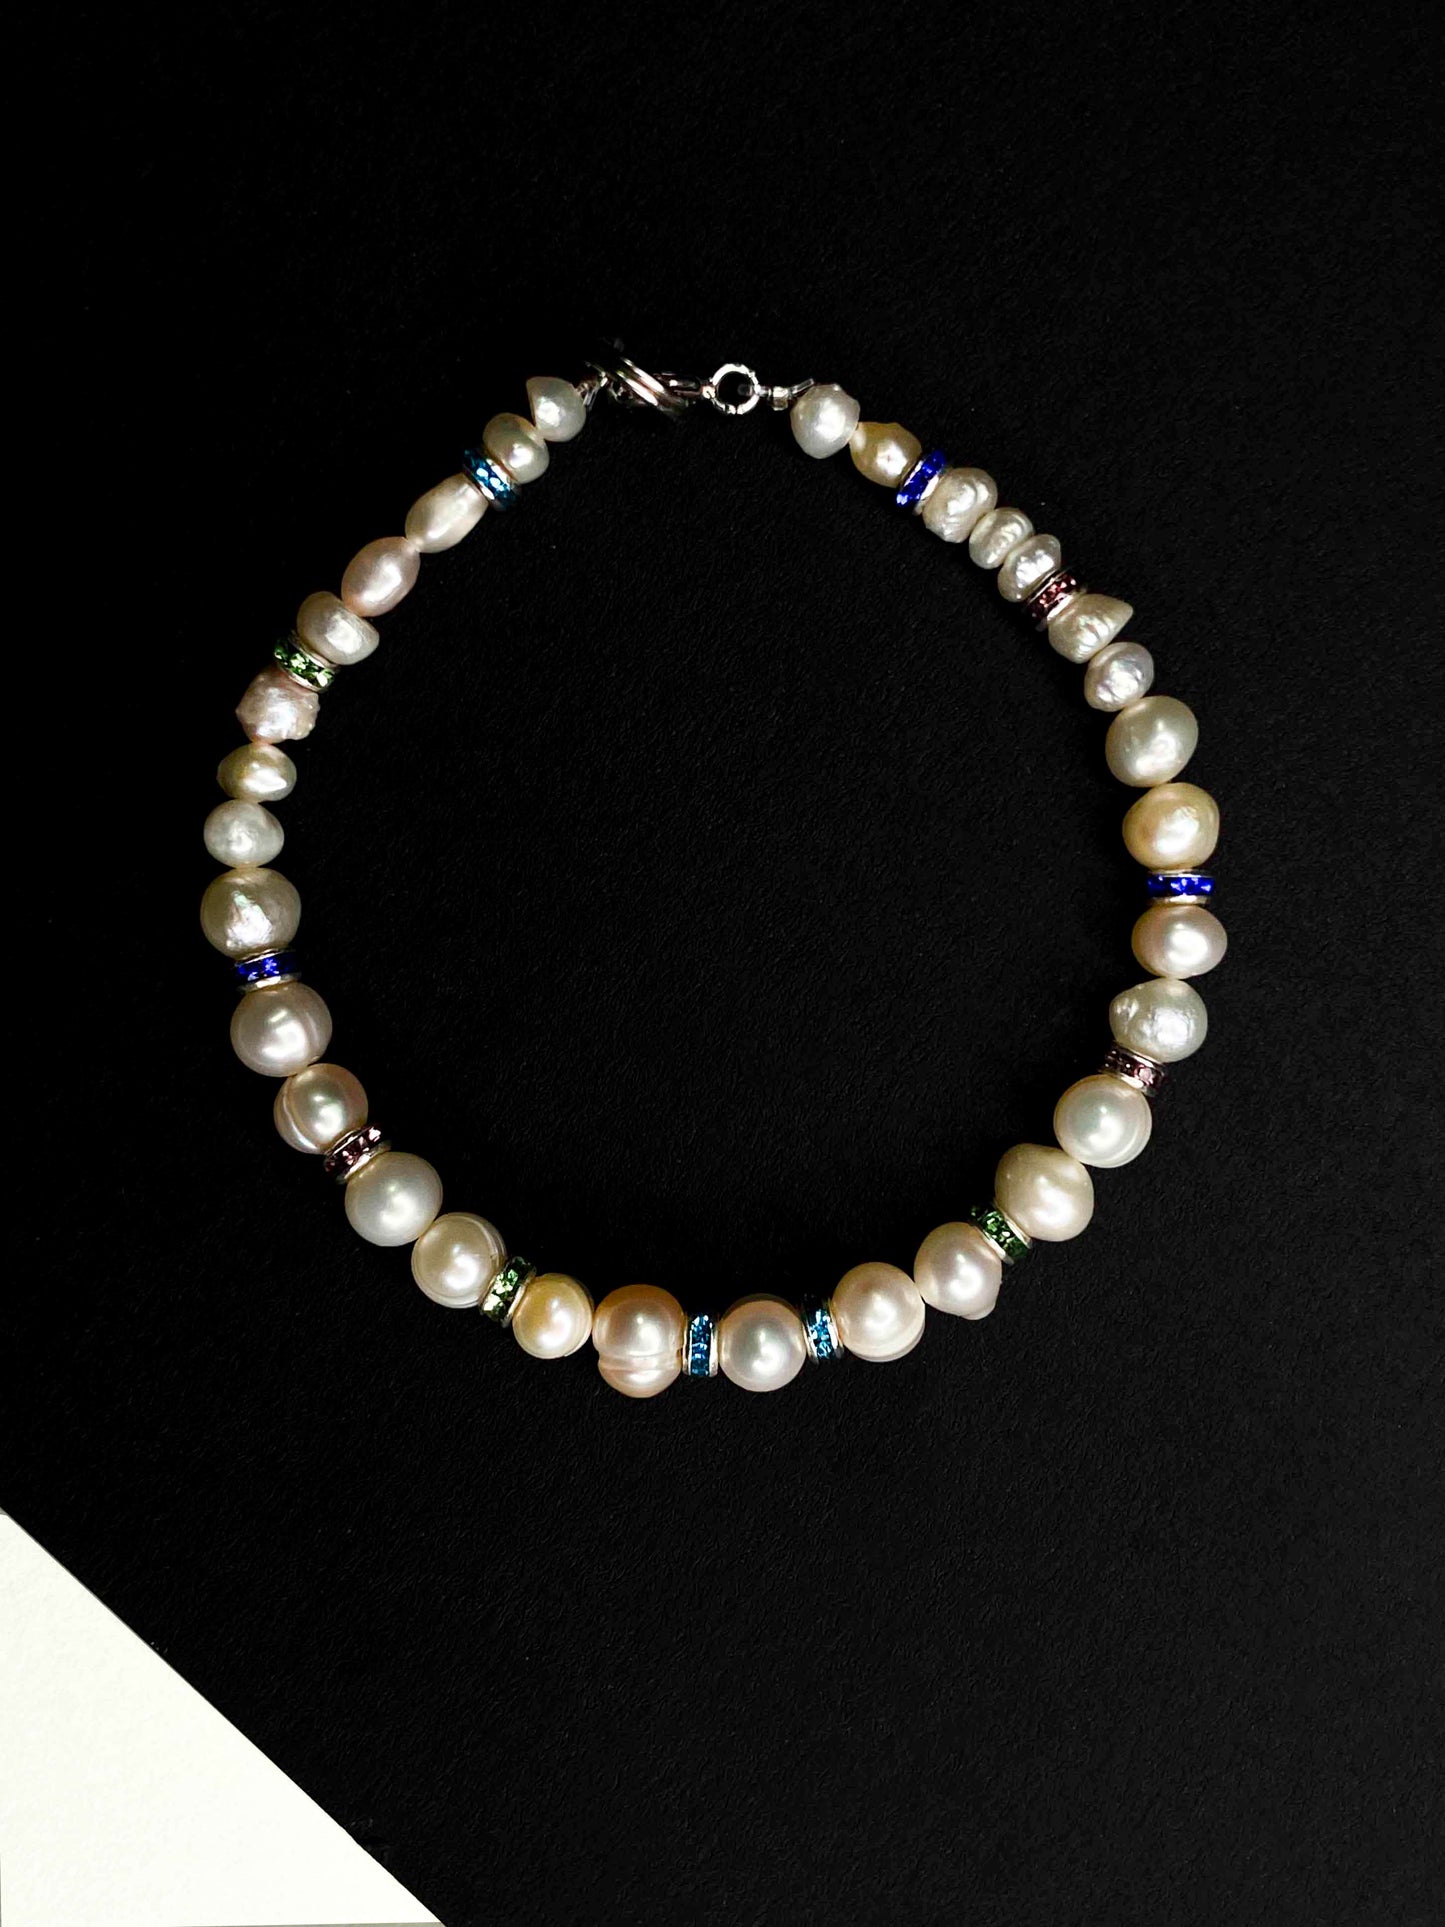 Handmade beaded pearl bracelet with rhinestone spacers. 